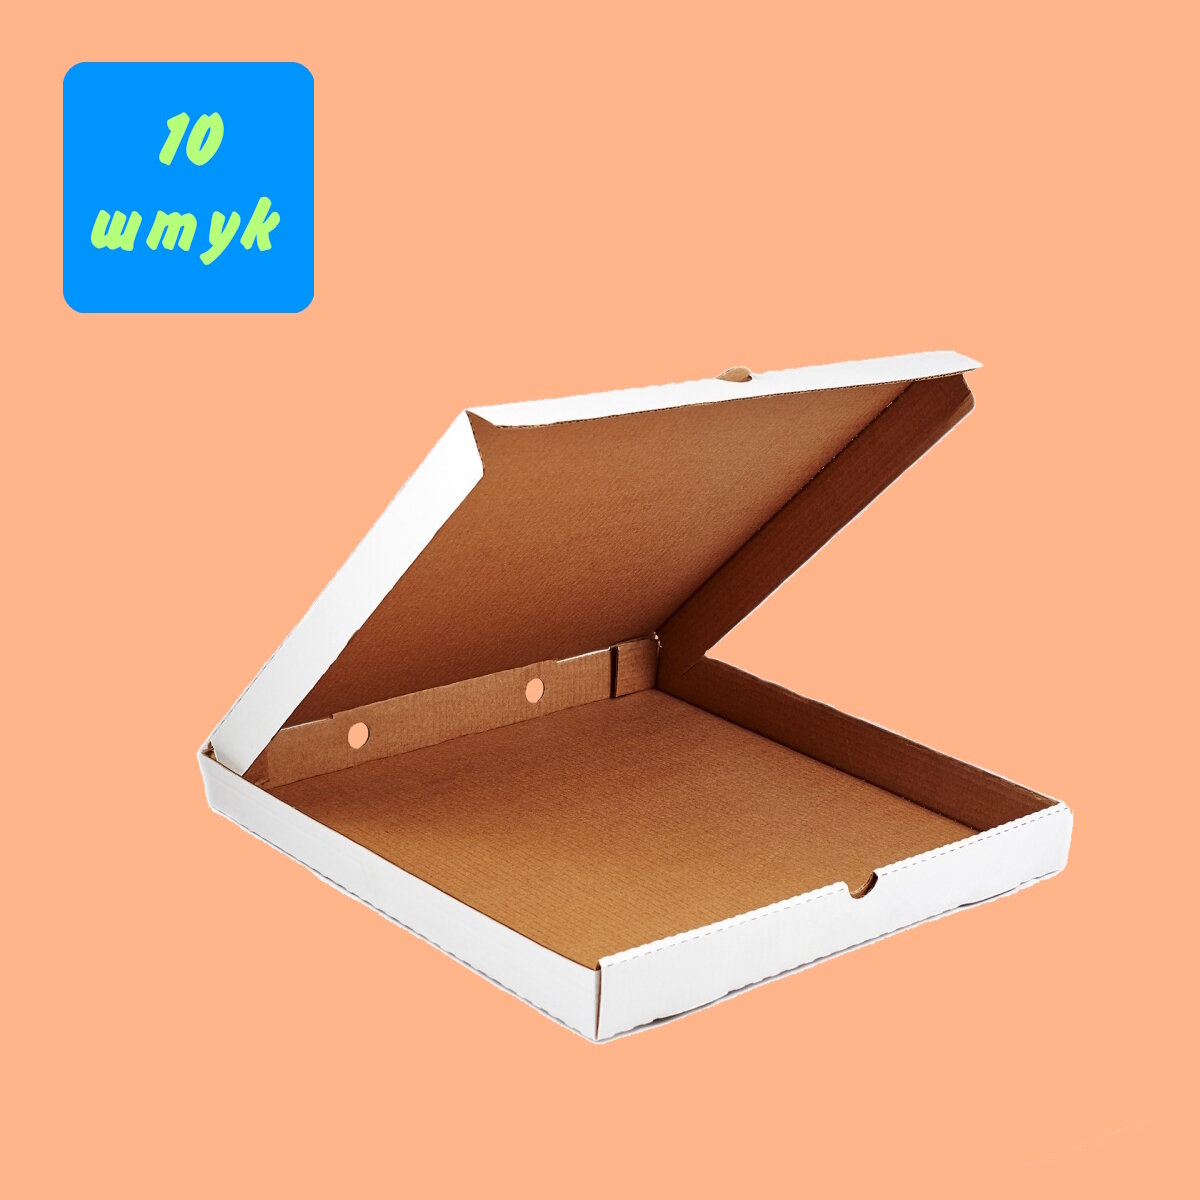 Гофрированная коробка 330*330*40 для пиццы и пирогов, из 3-х слойного микрогофрокартона белый (Д 30-33 см см), 10 штук